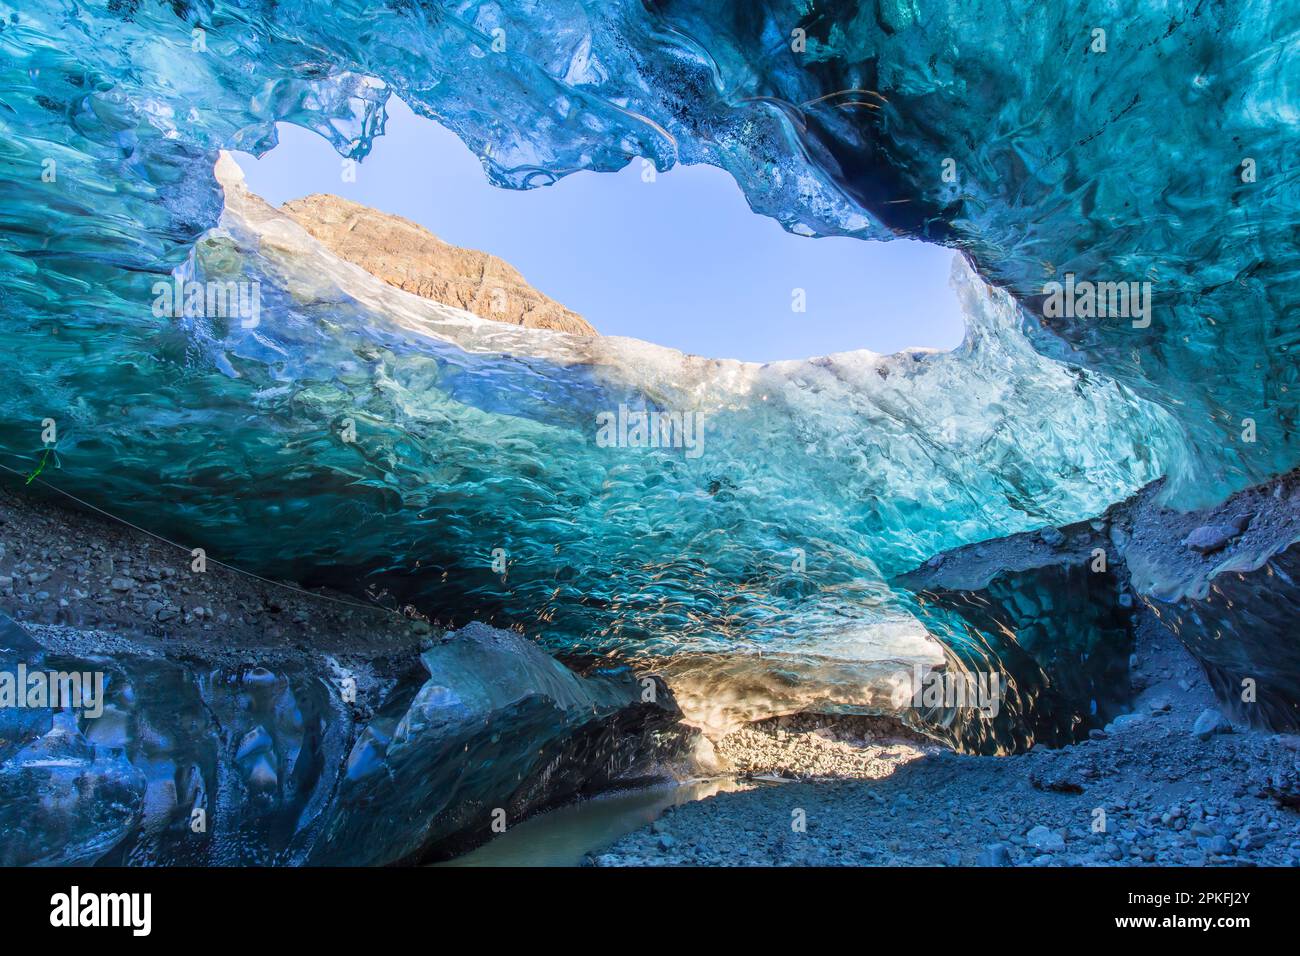 The Crystal, natural ice cave in the Breiðamerkurjökull / Breidamerkurjokull  Glacier in Vatnajökull National Park, Iceland Stock Photo - Alamy